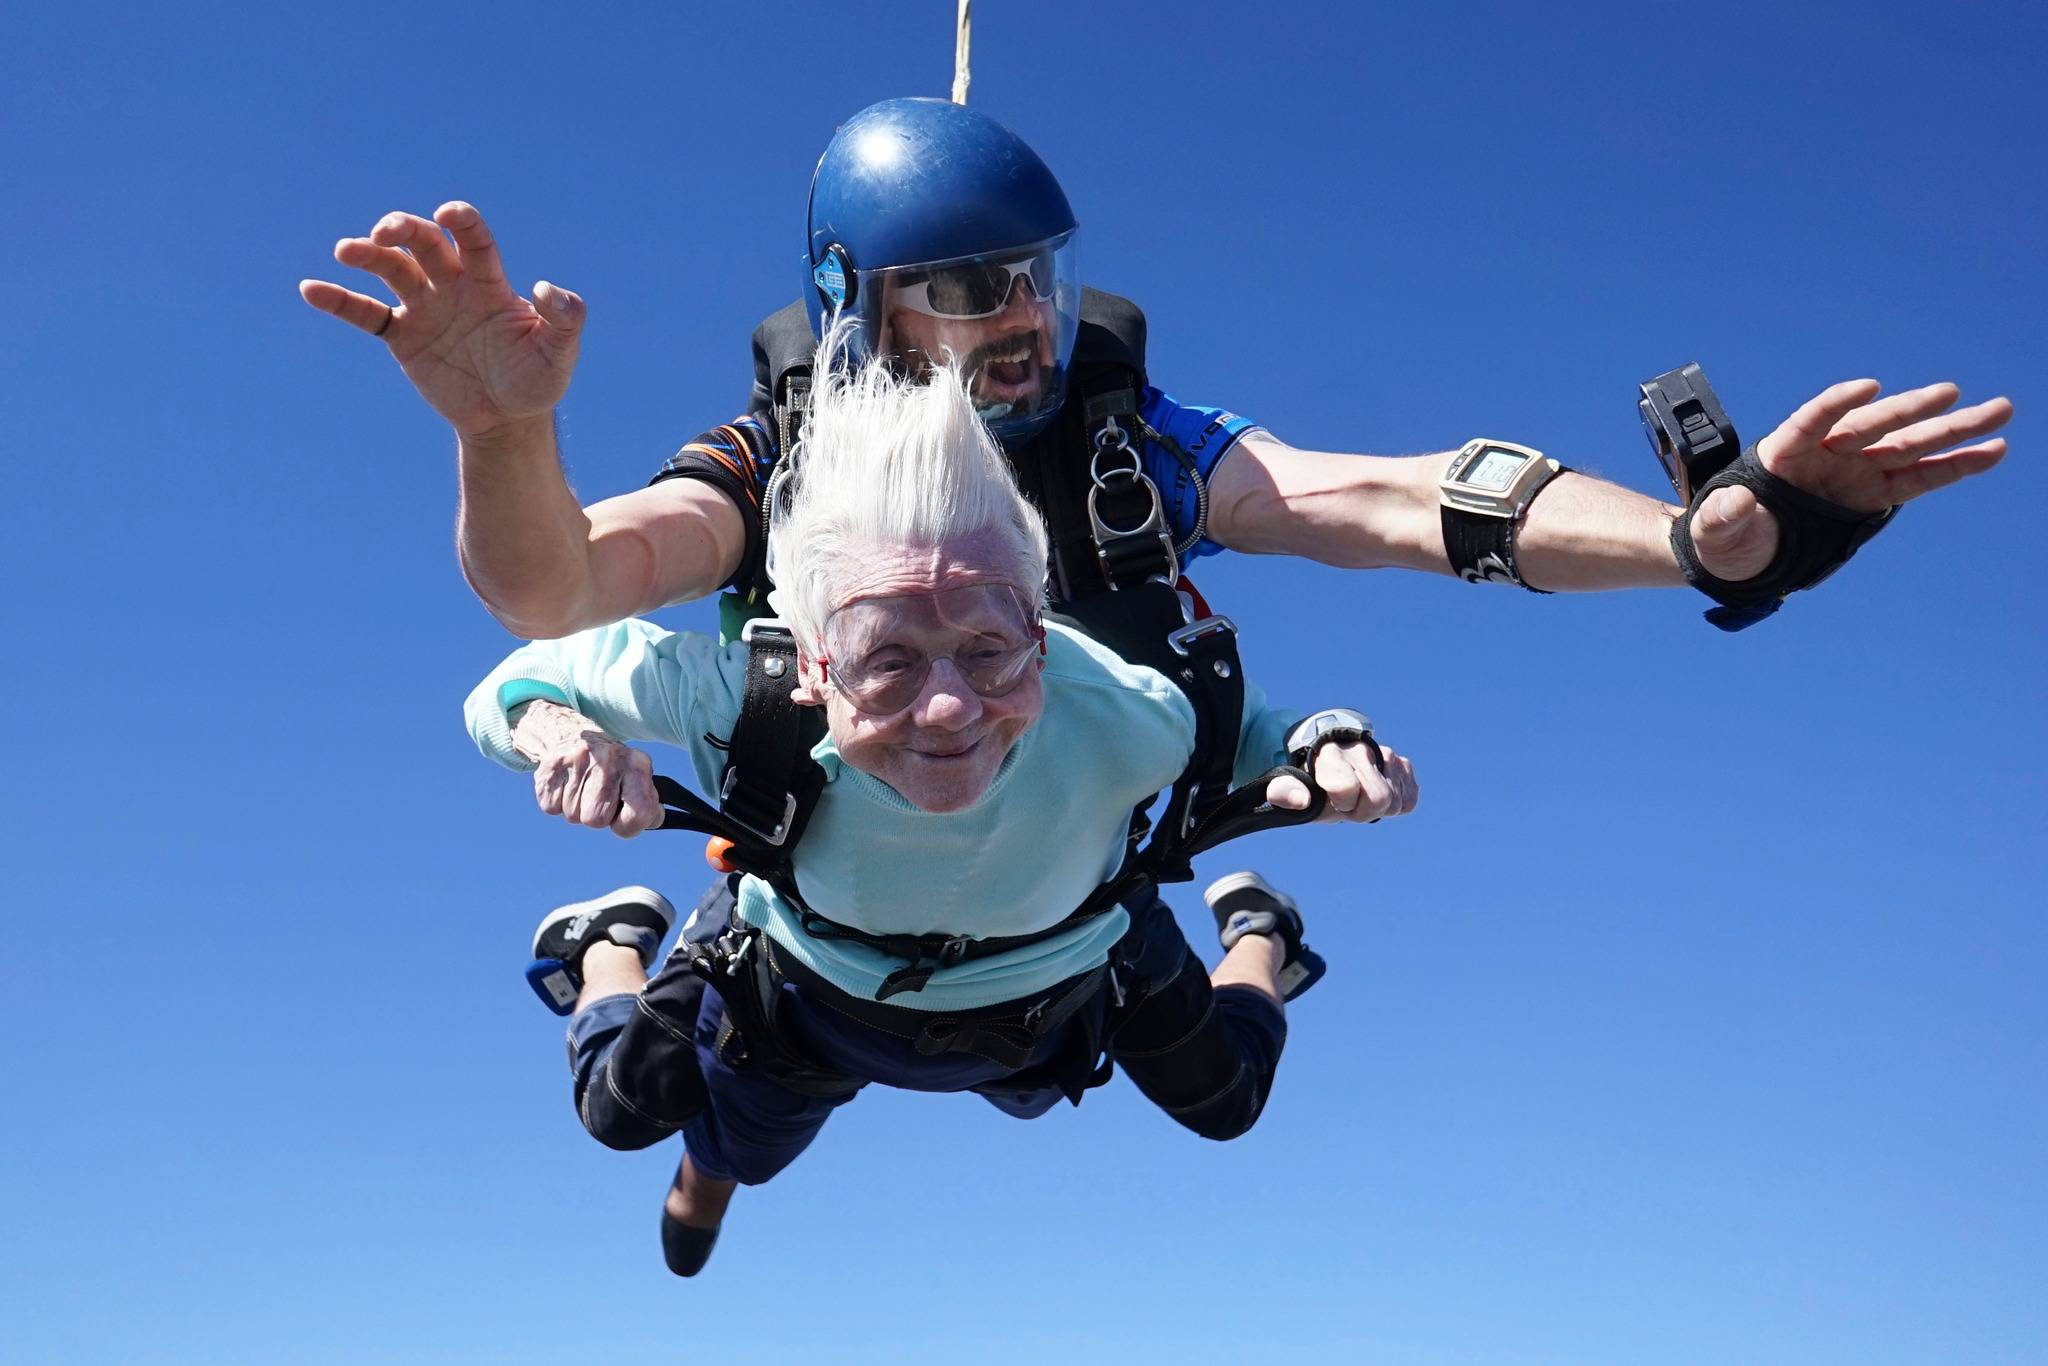 打破跳伞最高龄世界纪录一周后 104岁老太睡梦中离世,跳伞